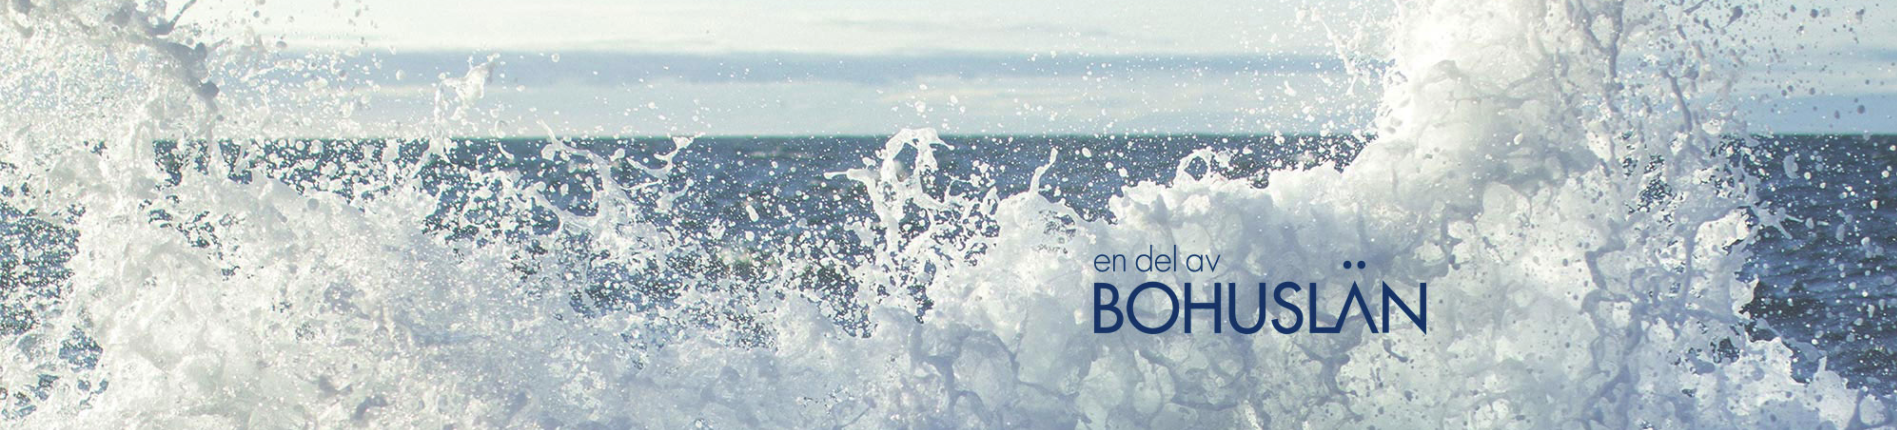 Bild: Havsvågor med texten Bohulän